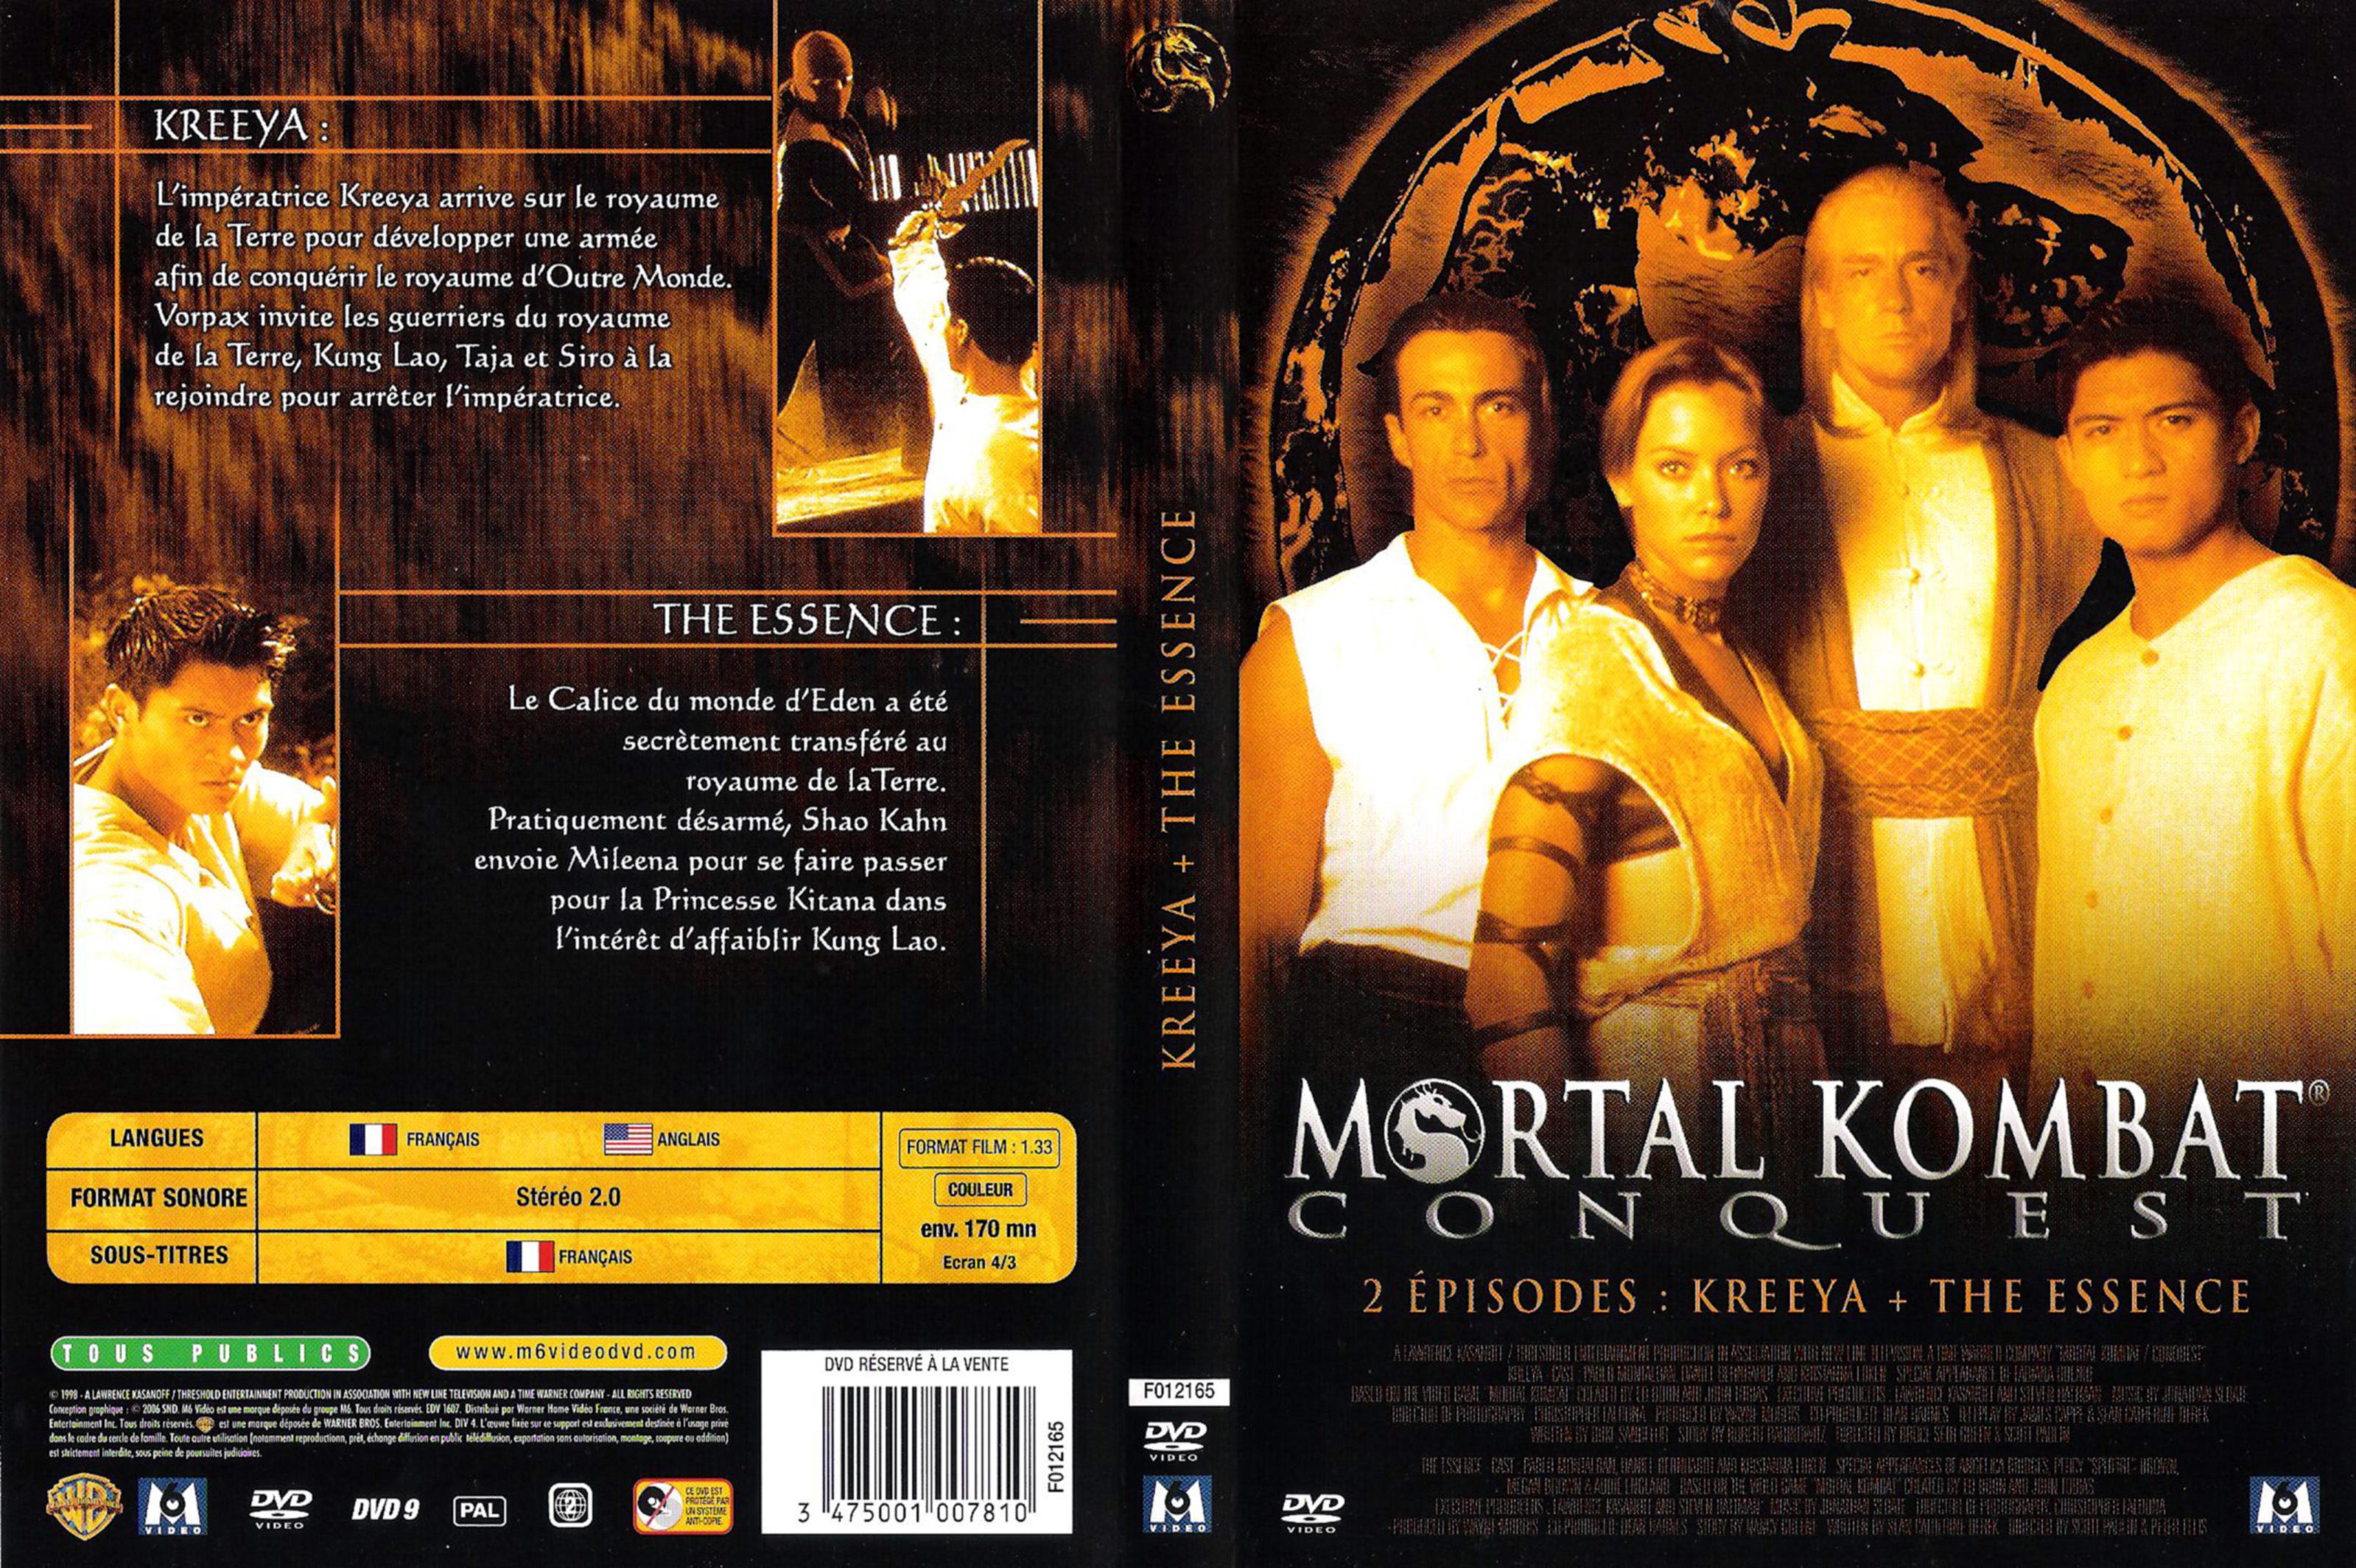 Jaquette DVD Mortal kombat conquest (kreeya + the essence)